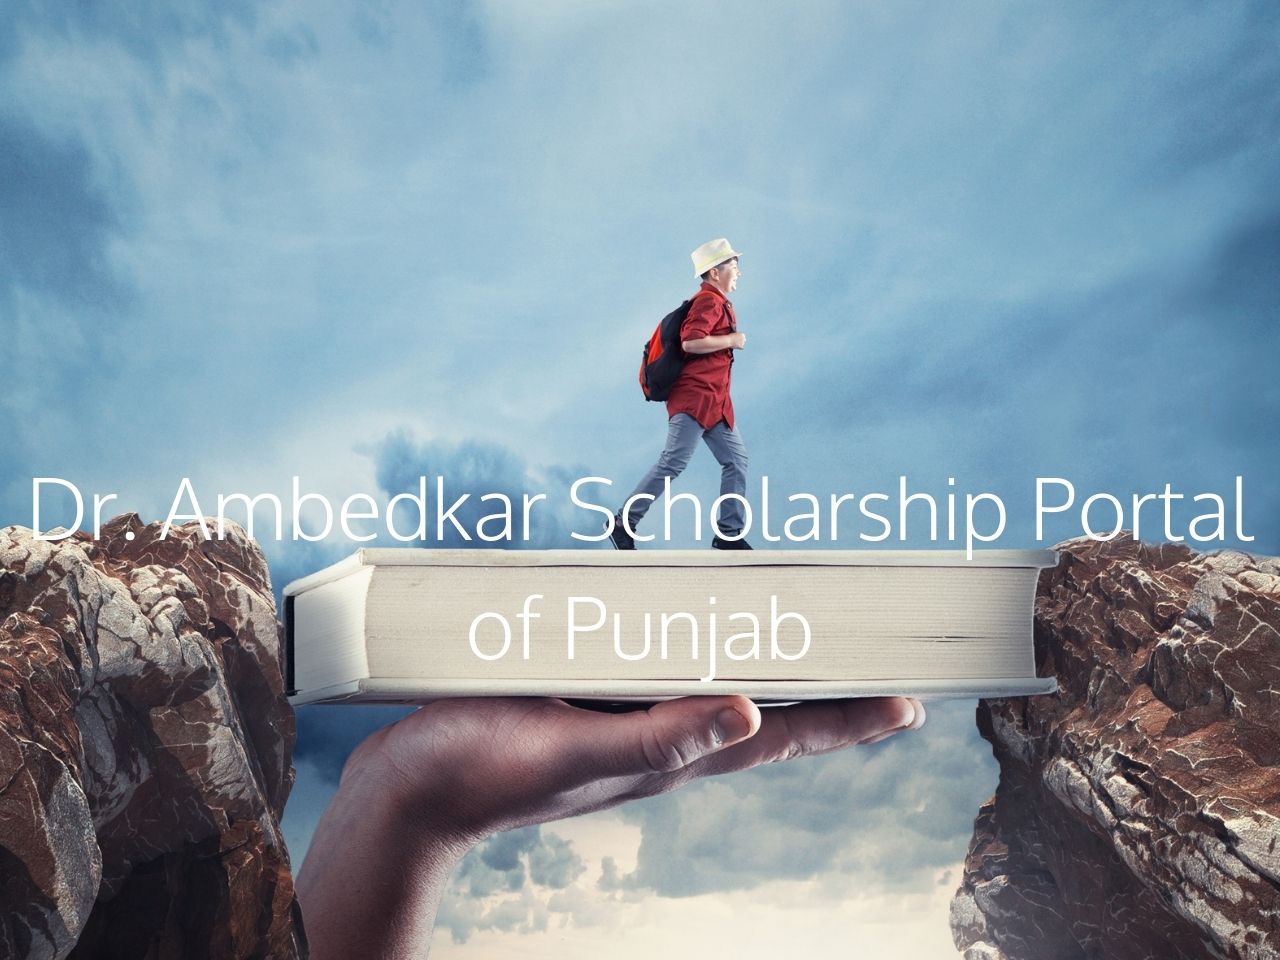 Dr. Ambedkar Scholarship Portal